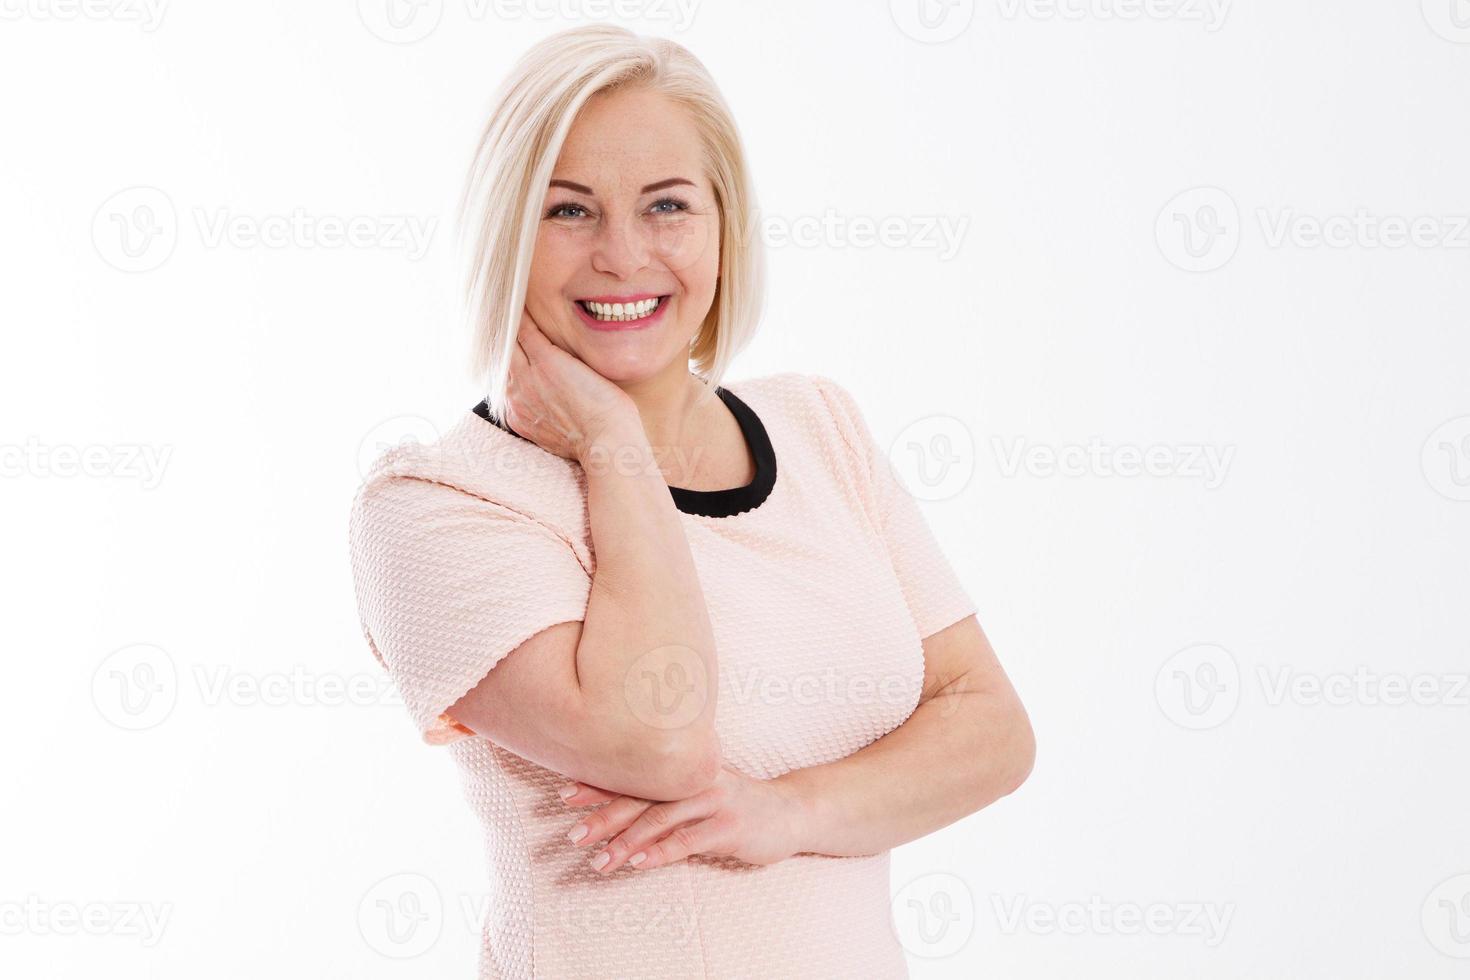 Geschäftsfrau des mittleren Alters, die über weißem Hintergrundkopieraum aufwirft, Portrait der attraktiven jungen Frau mittleren Alters, die gegen lokalisierten weißen Hintergrund lächelt foto